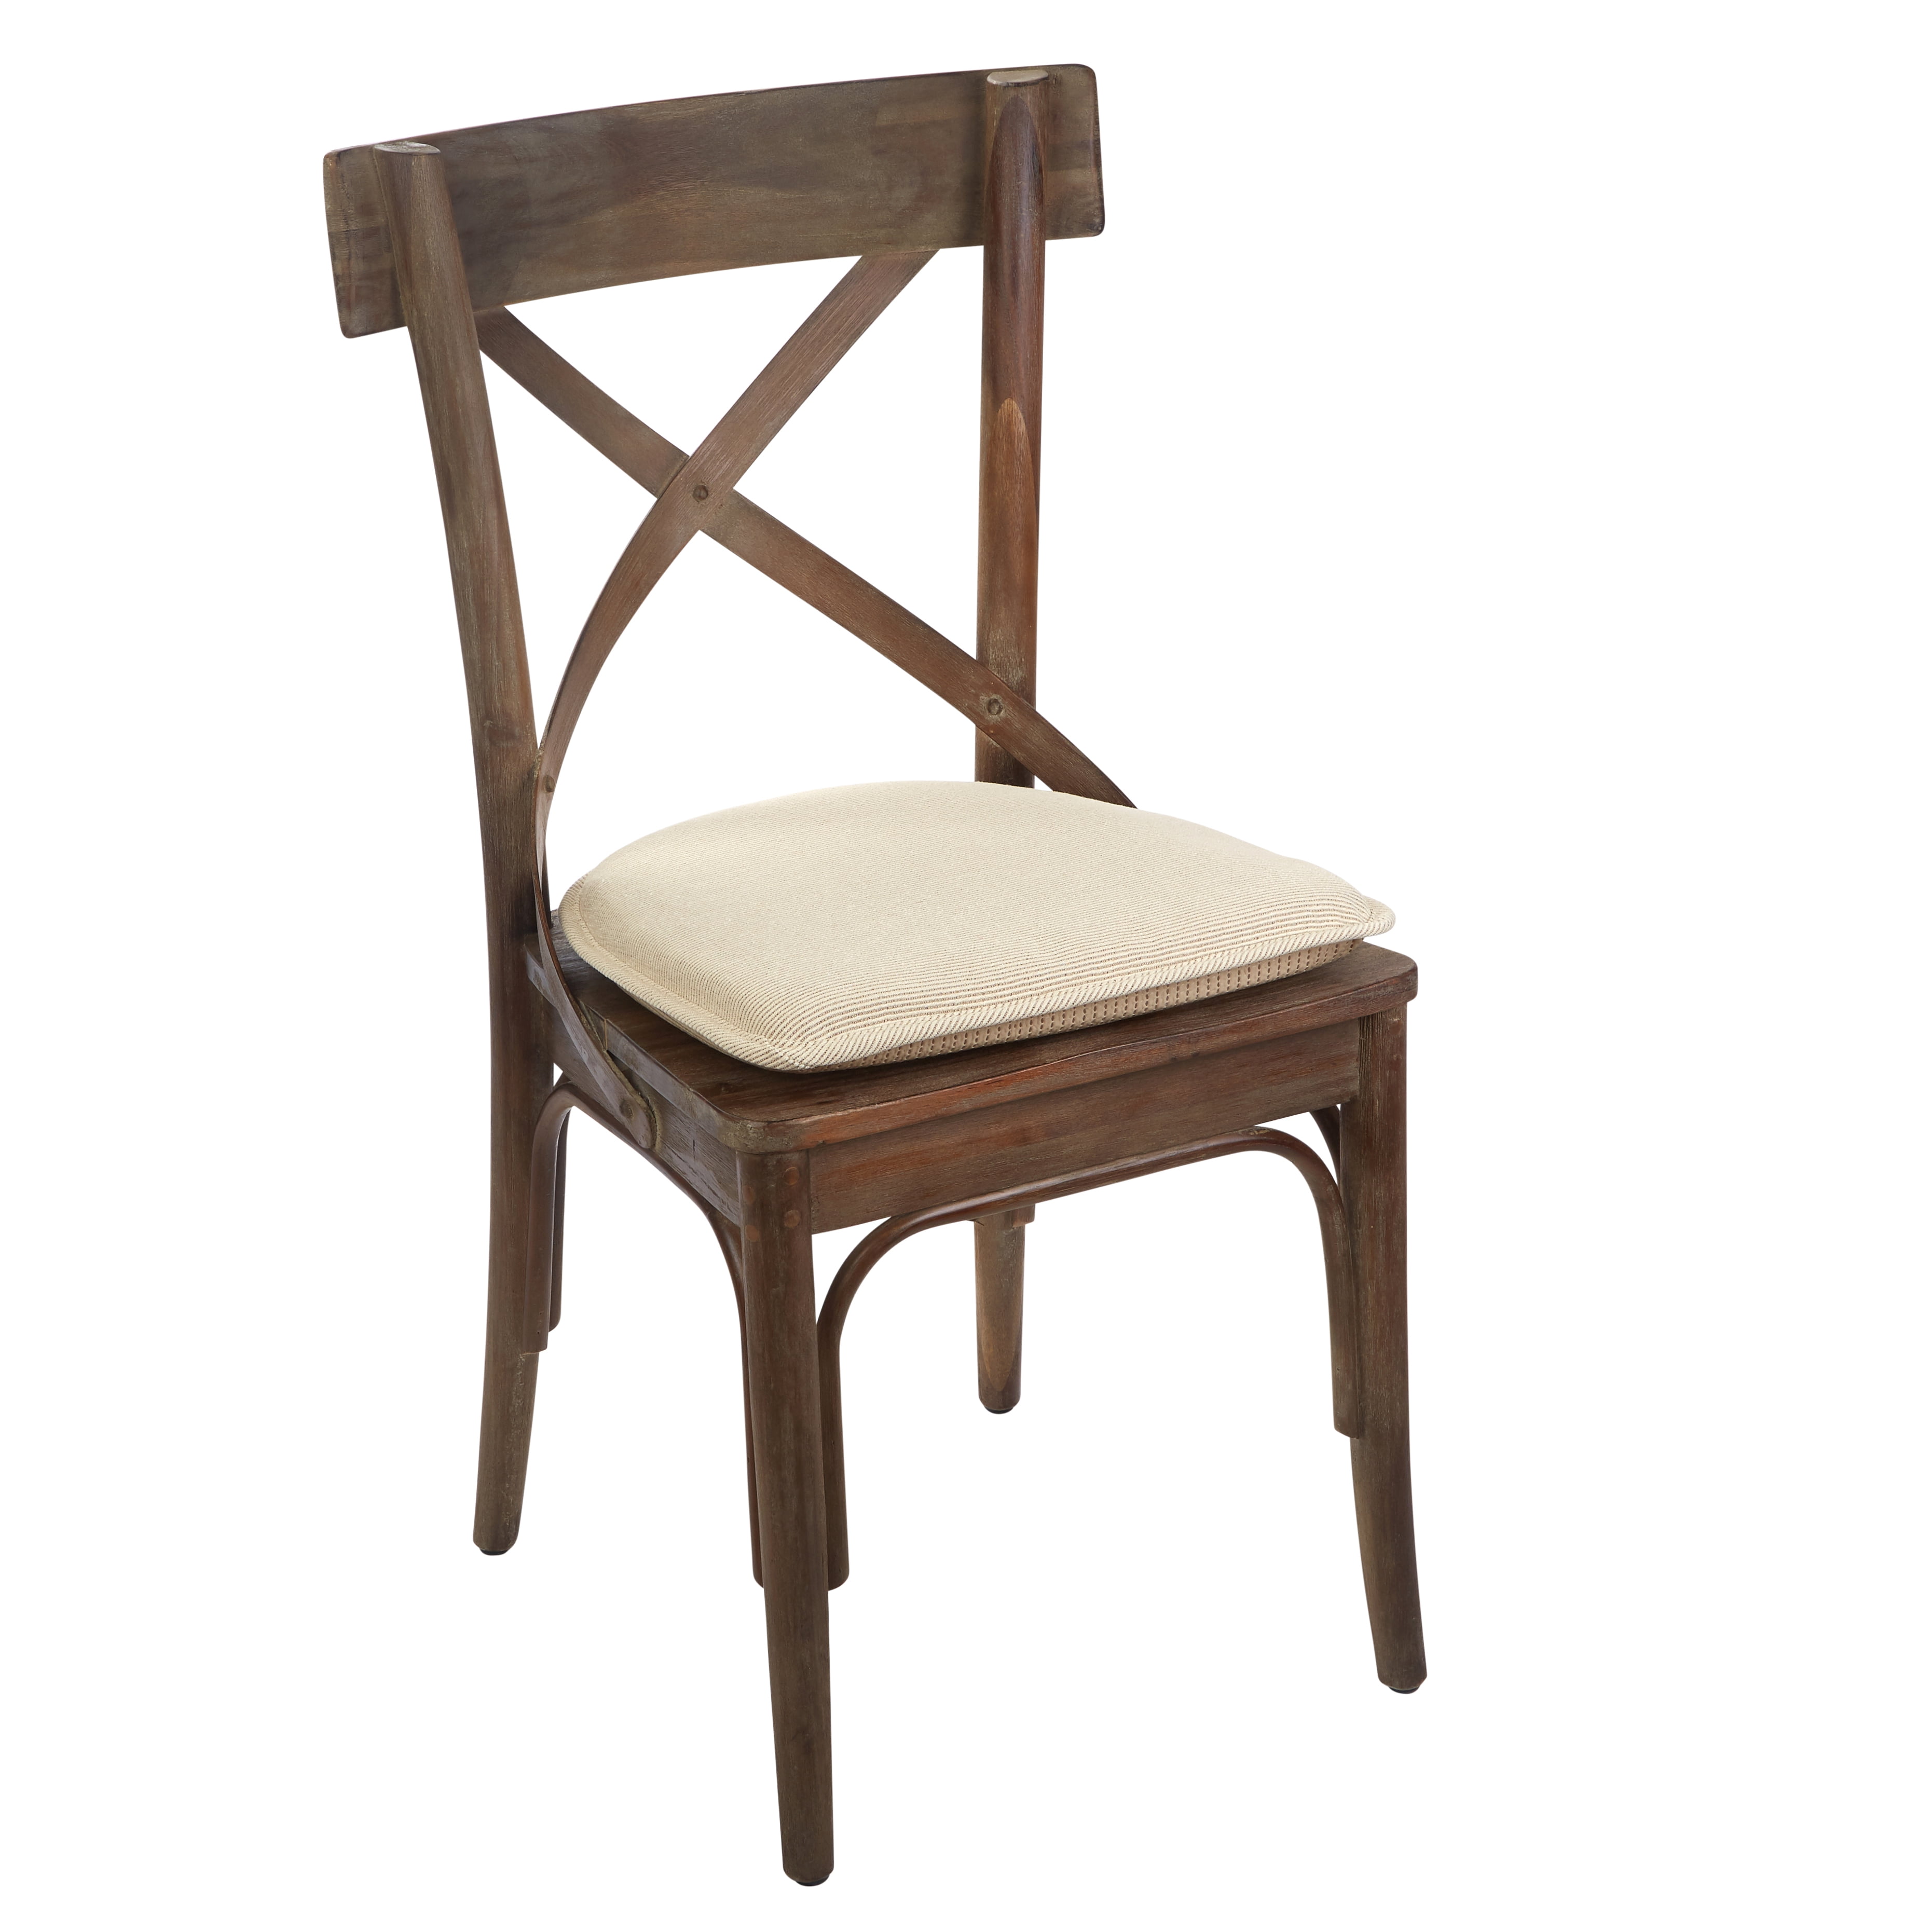  VINGAA Non Slip Chair Cushion,Office Chair Cushions